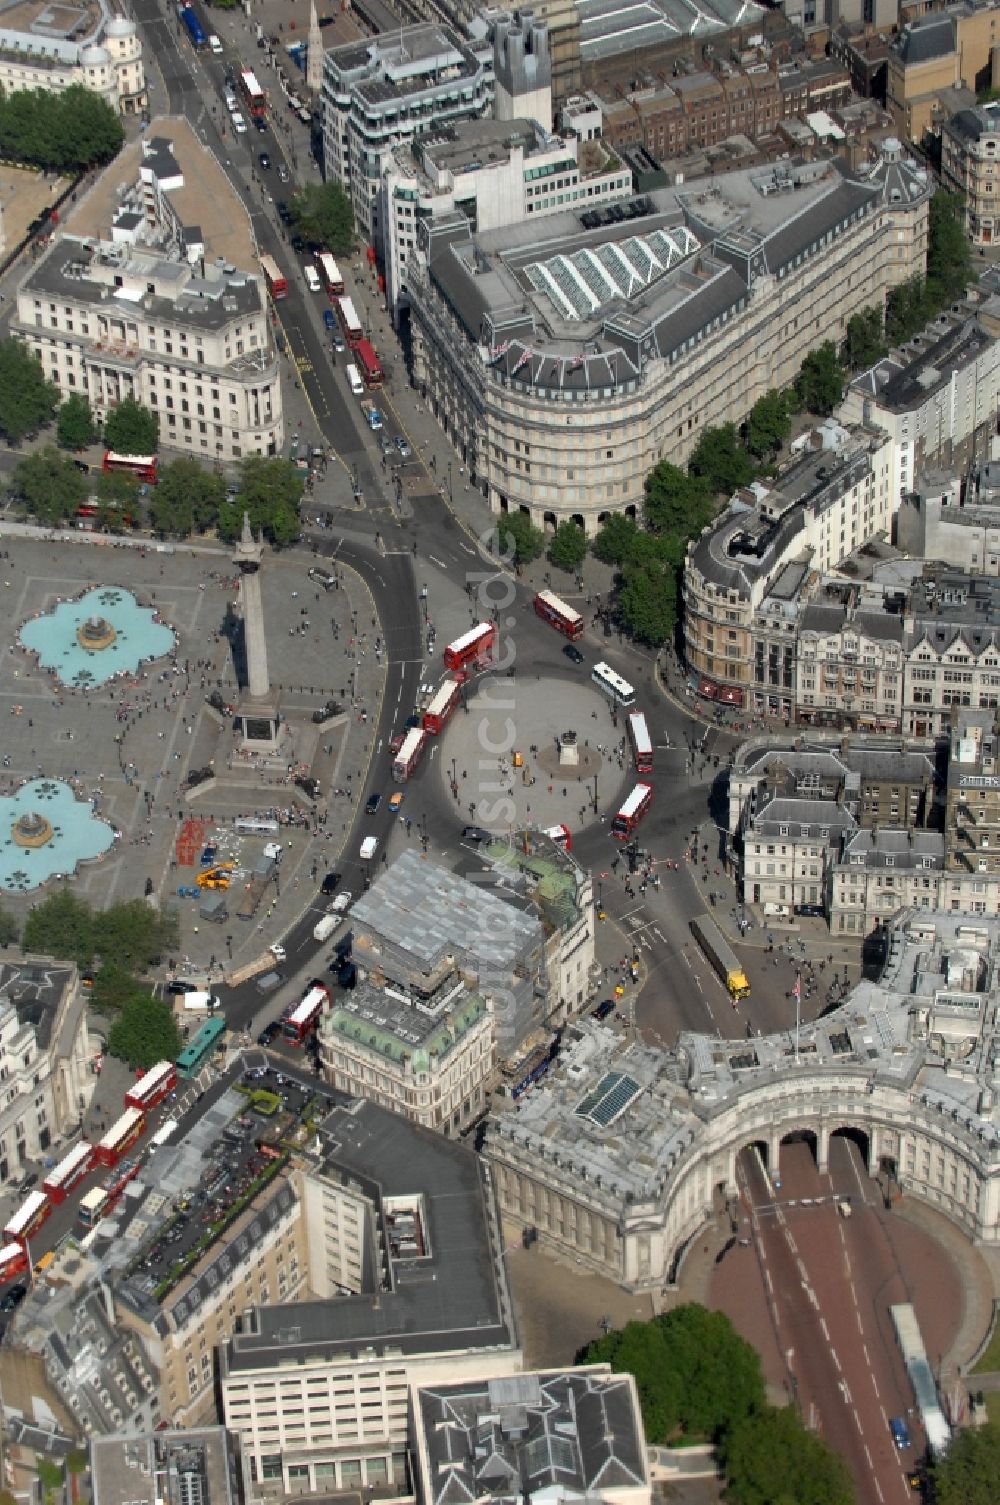 Luftbild London - Touristenattraktion und zentraler Treffpunkt in London: Trafalgar Square mit Nelson-Denkmal und Fontänen